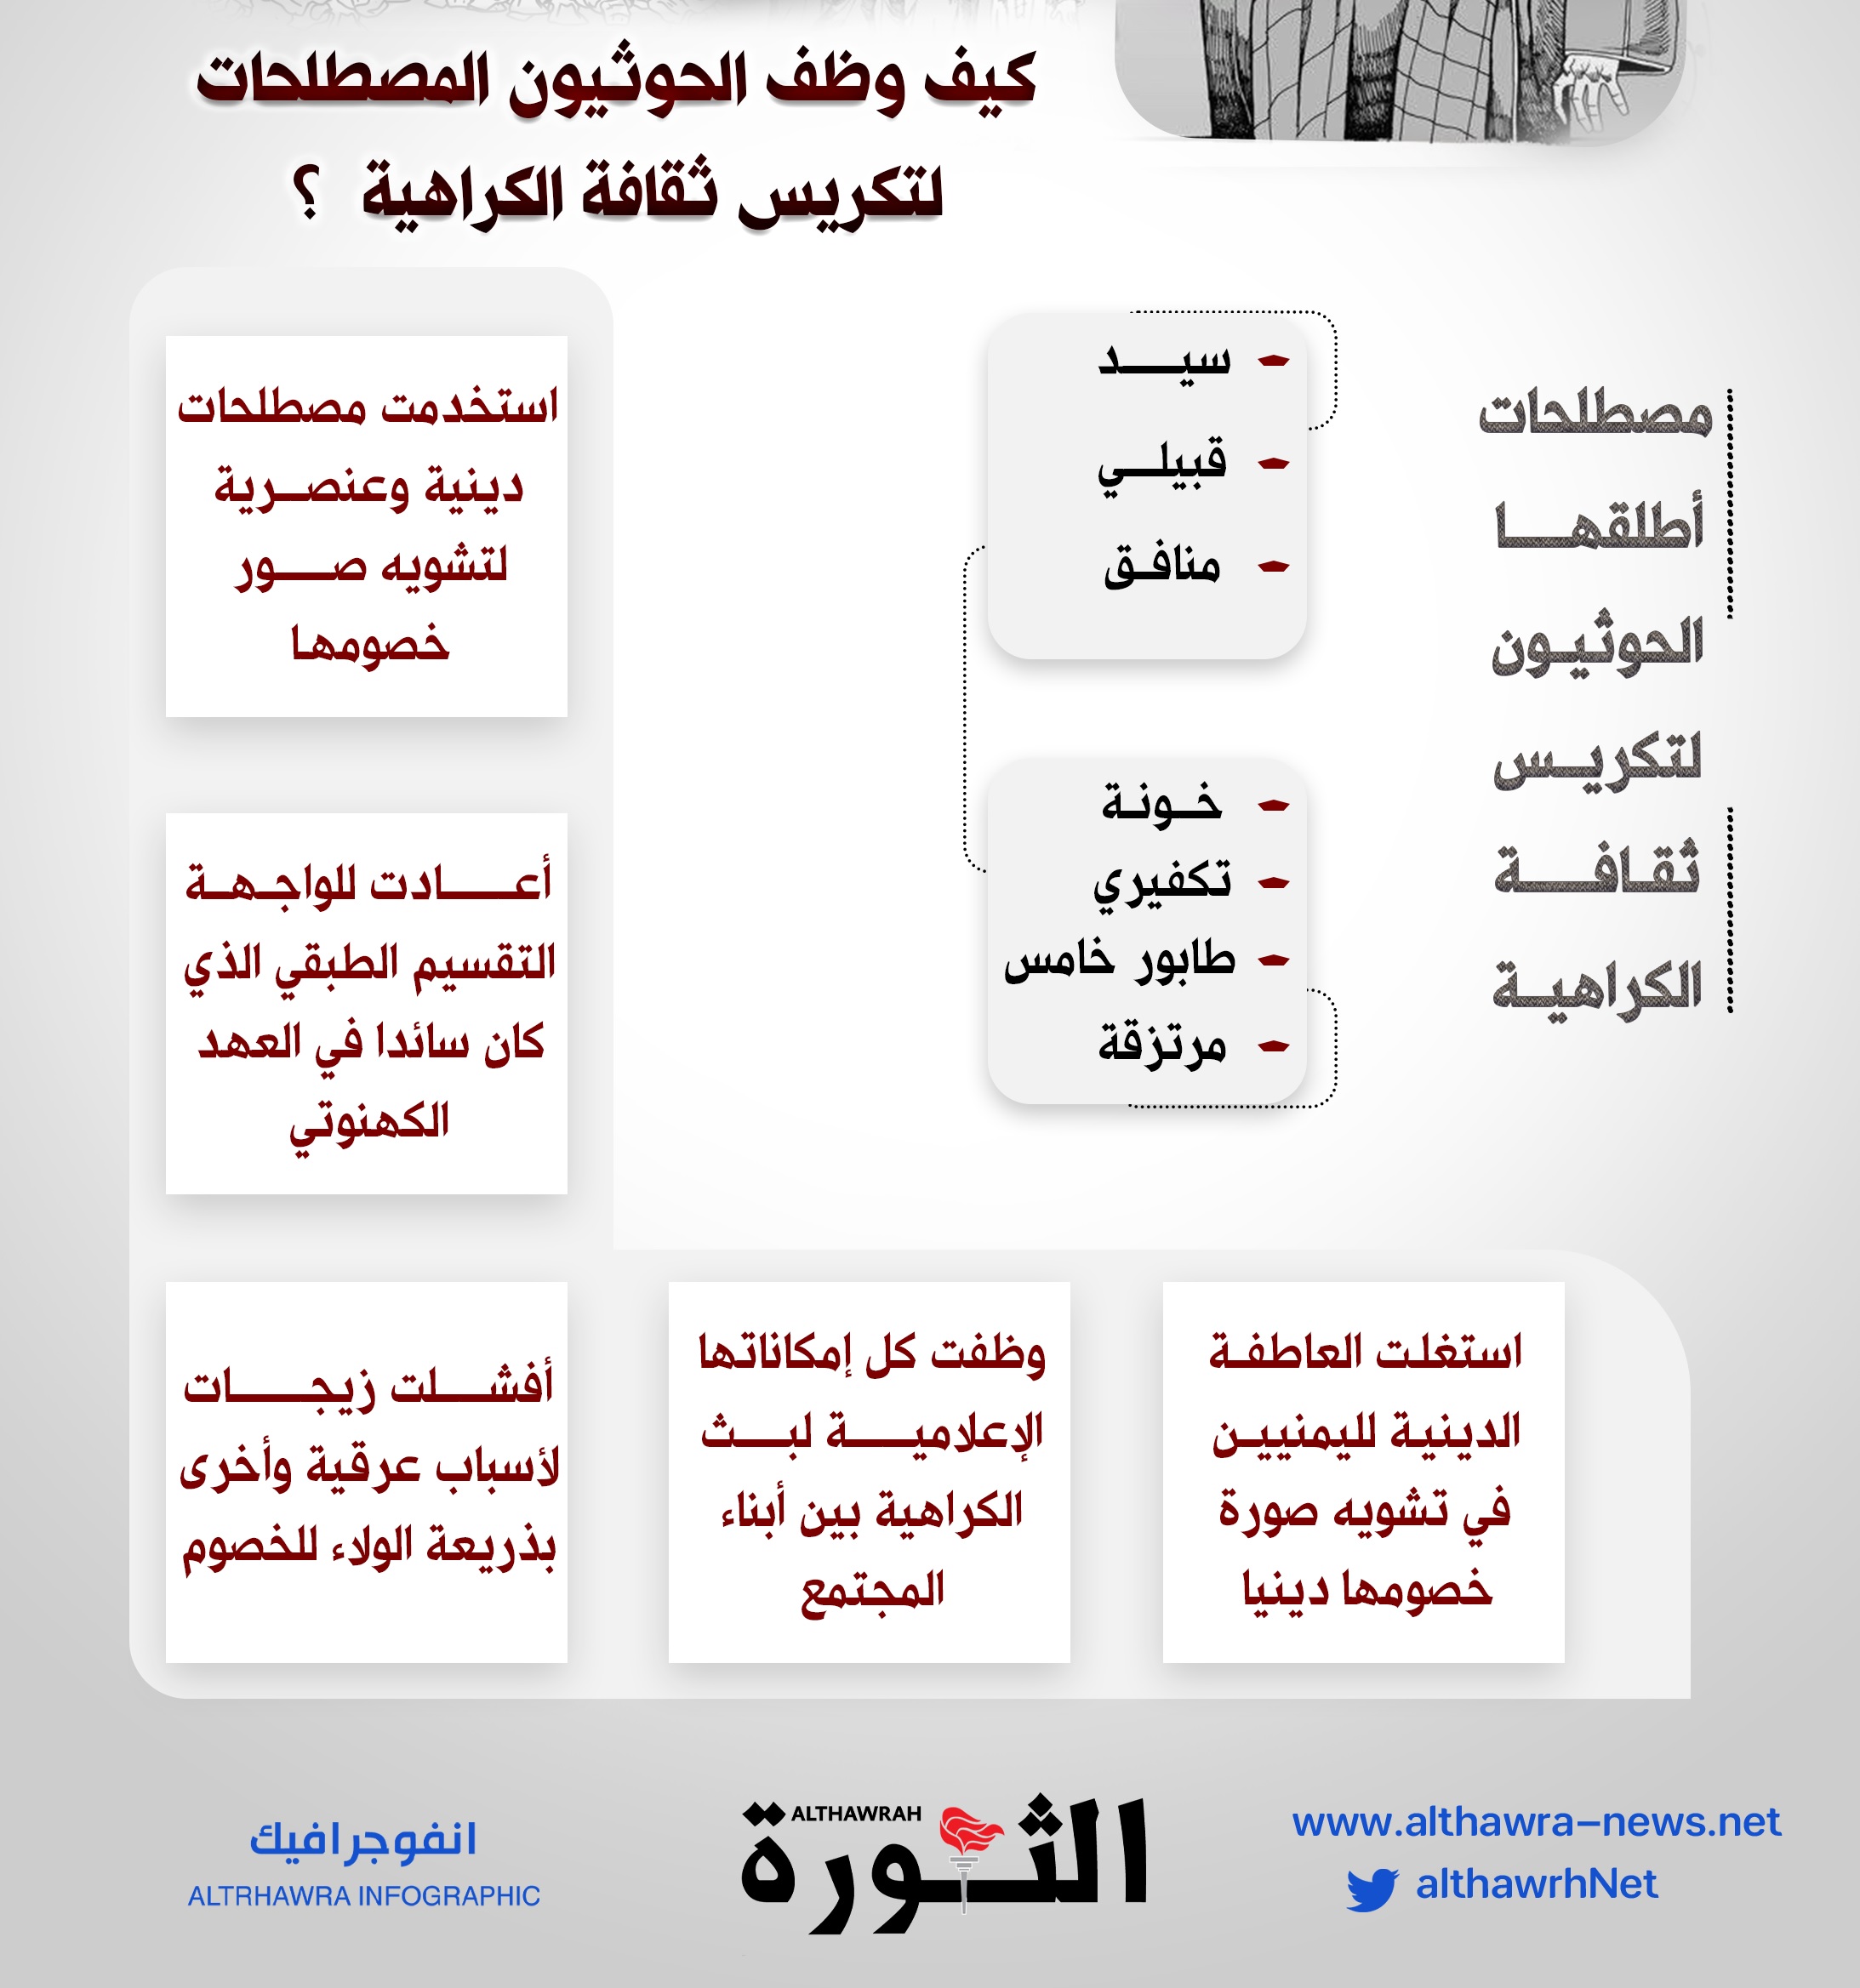 إنفوغرافيك يوضح كيف استخدم الحوثيون المصطلحات لنشر ثقافة الكراهية